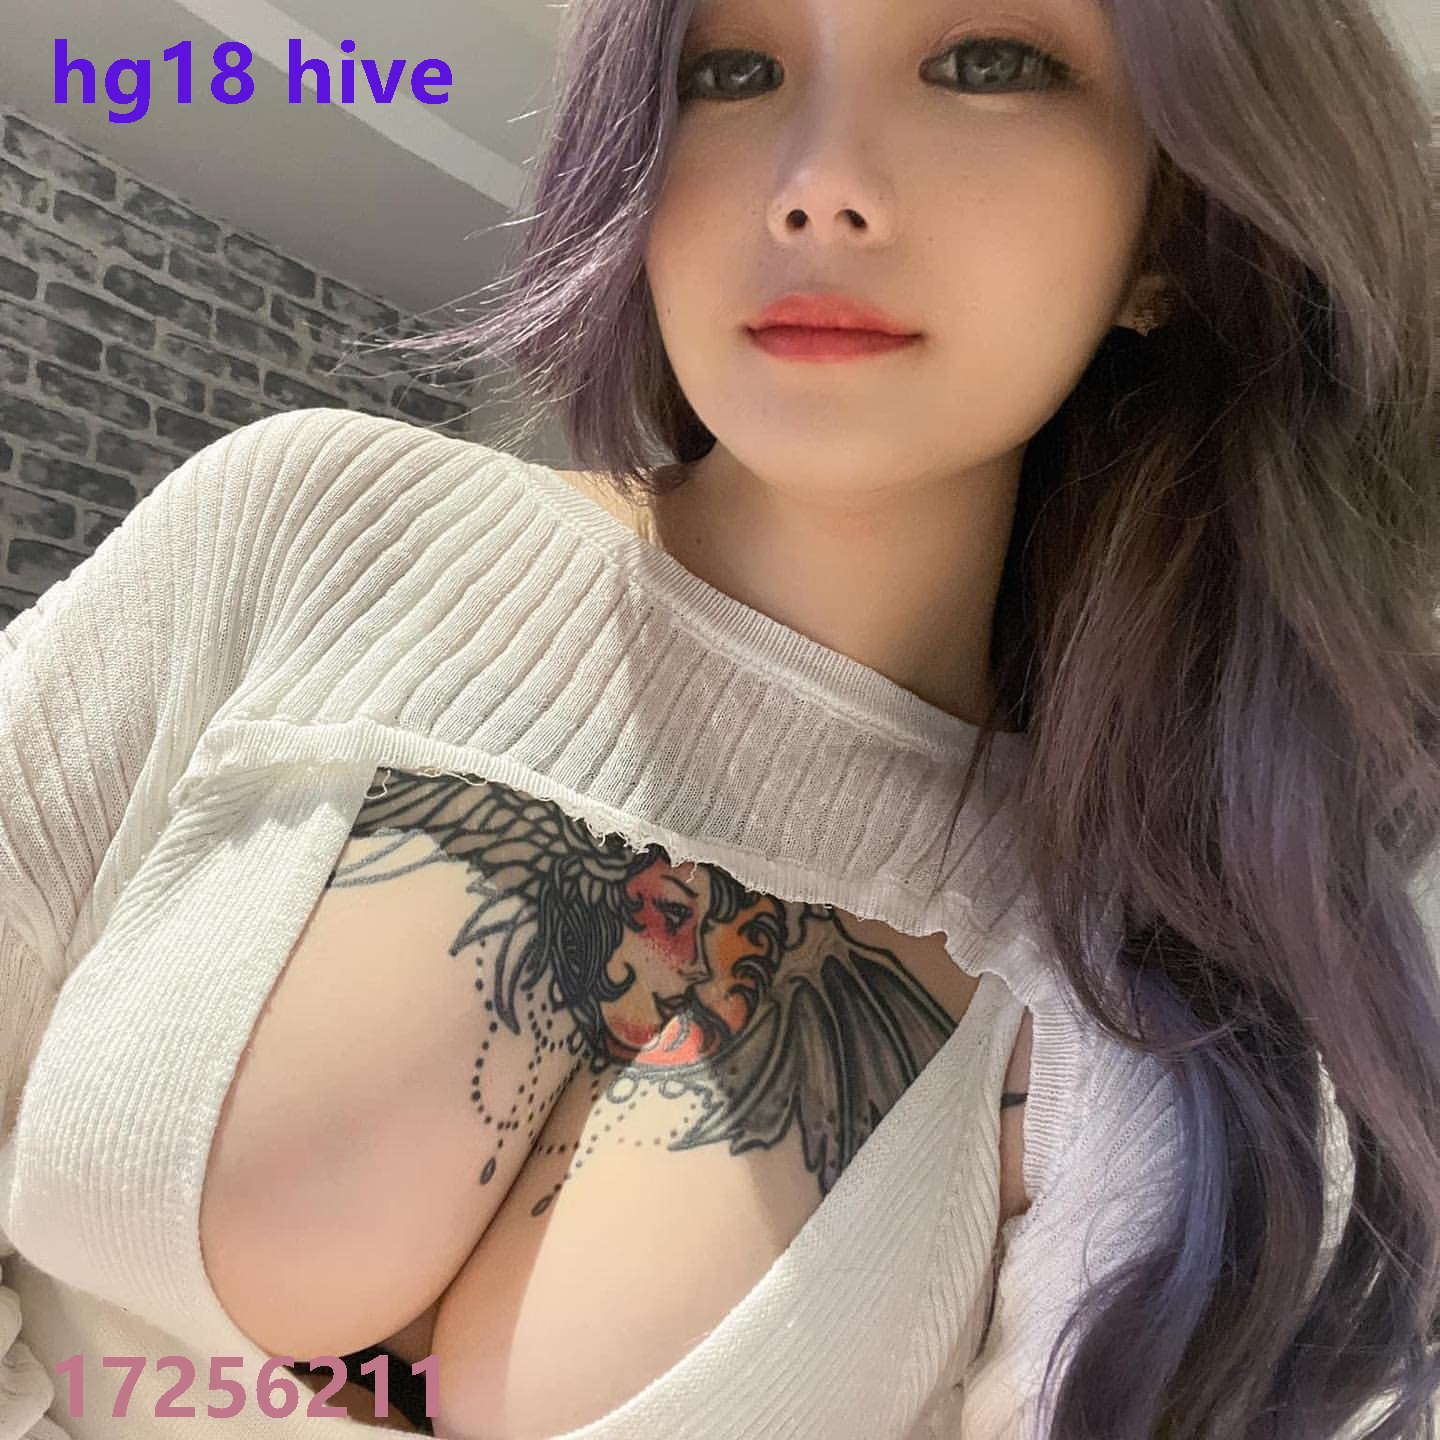 hg18 hive